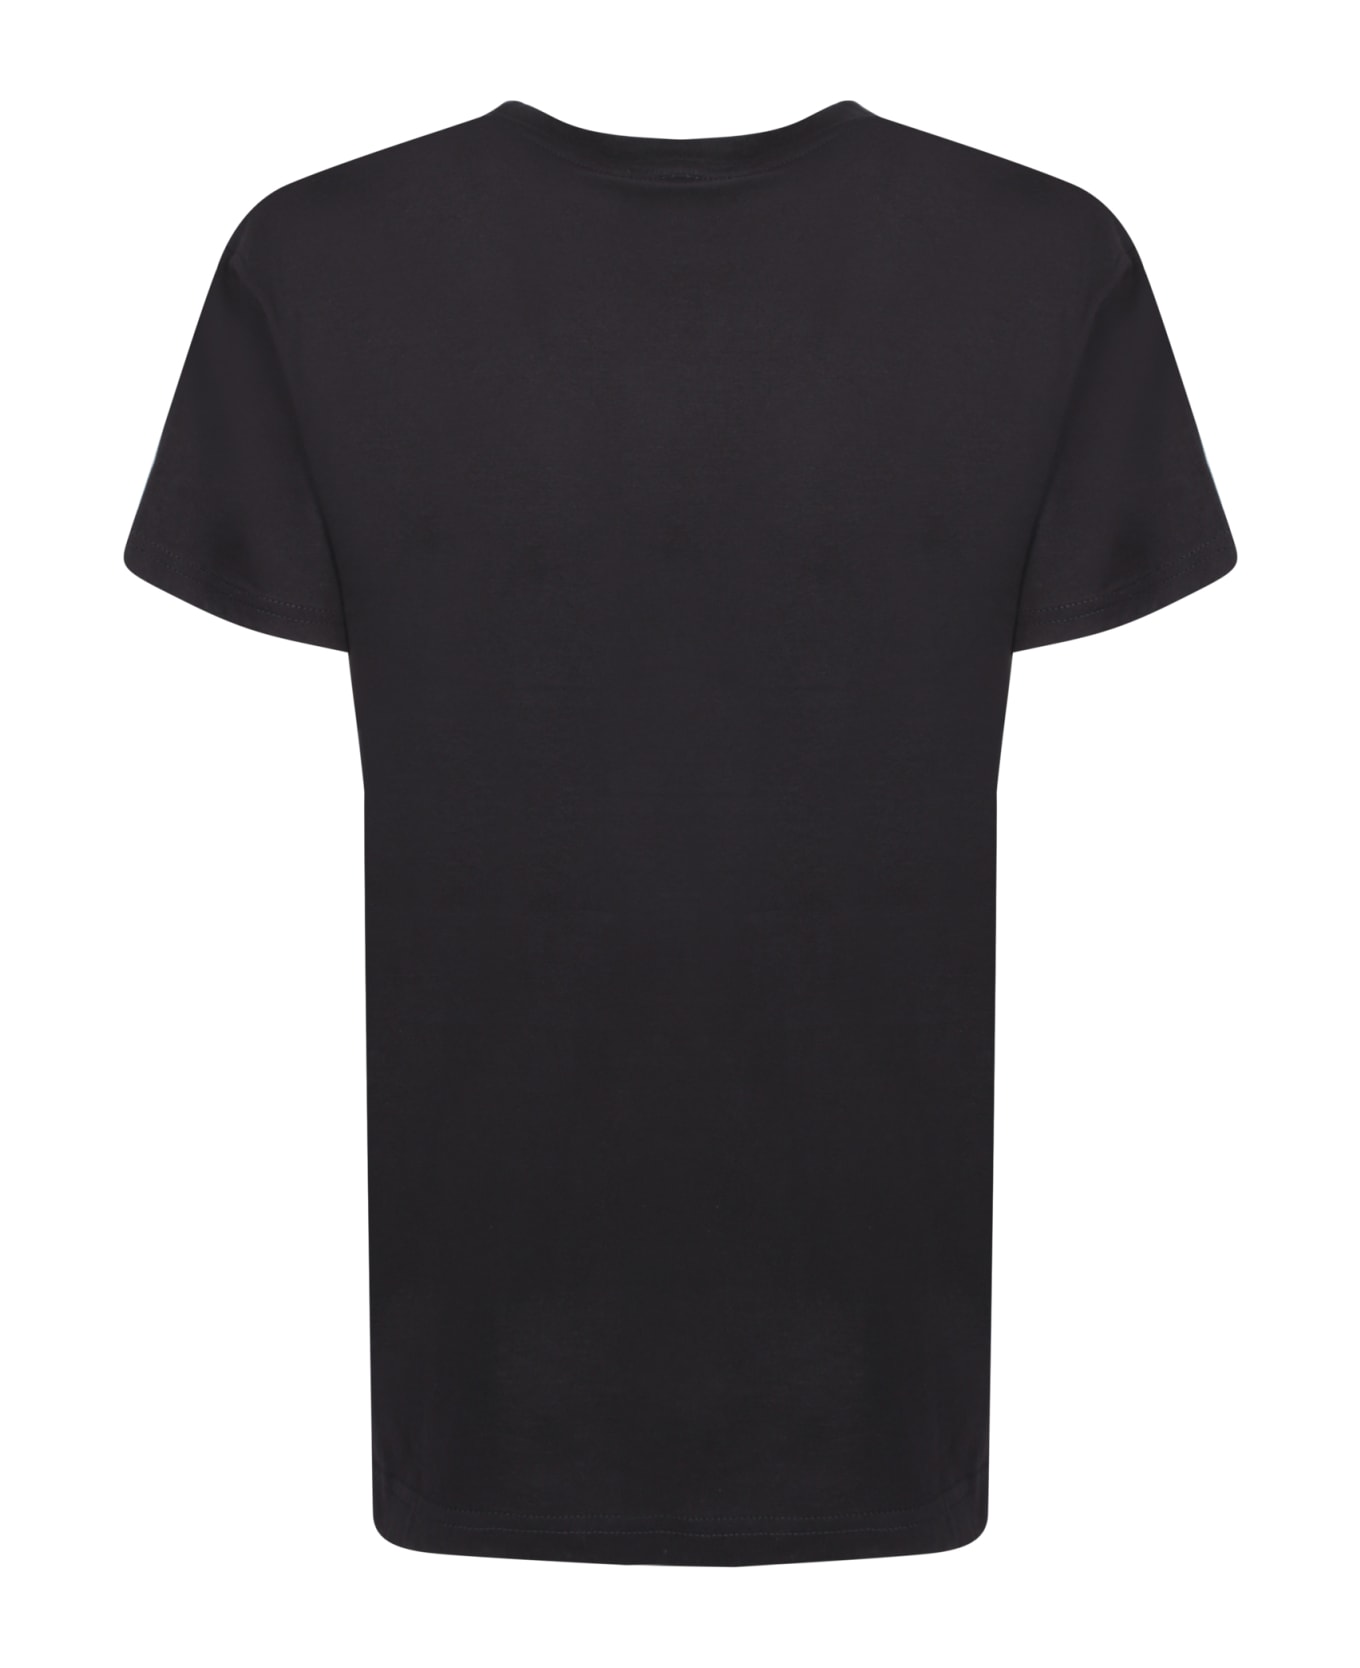 Alessandro Enriquez Amore Black T-shirt - Black